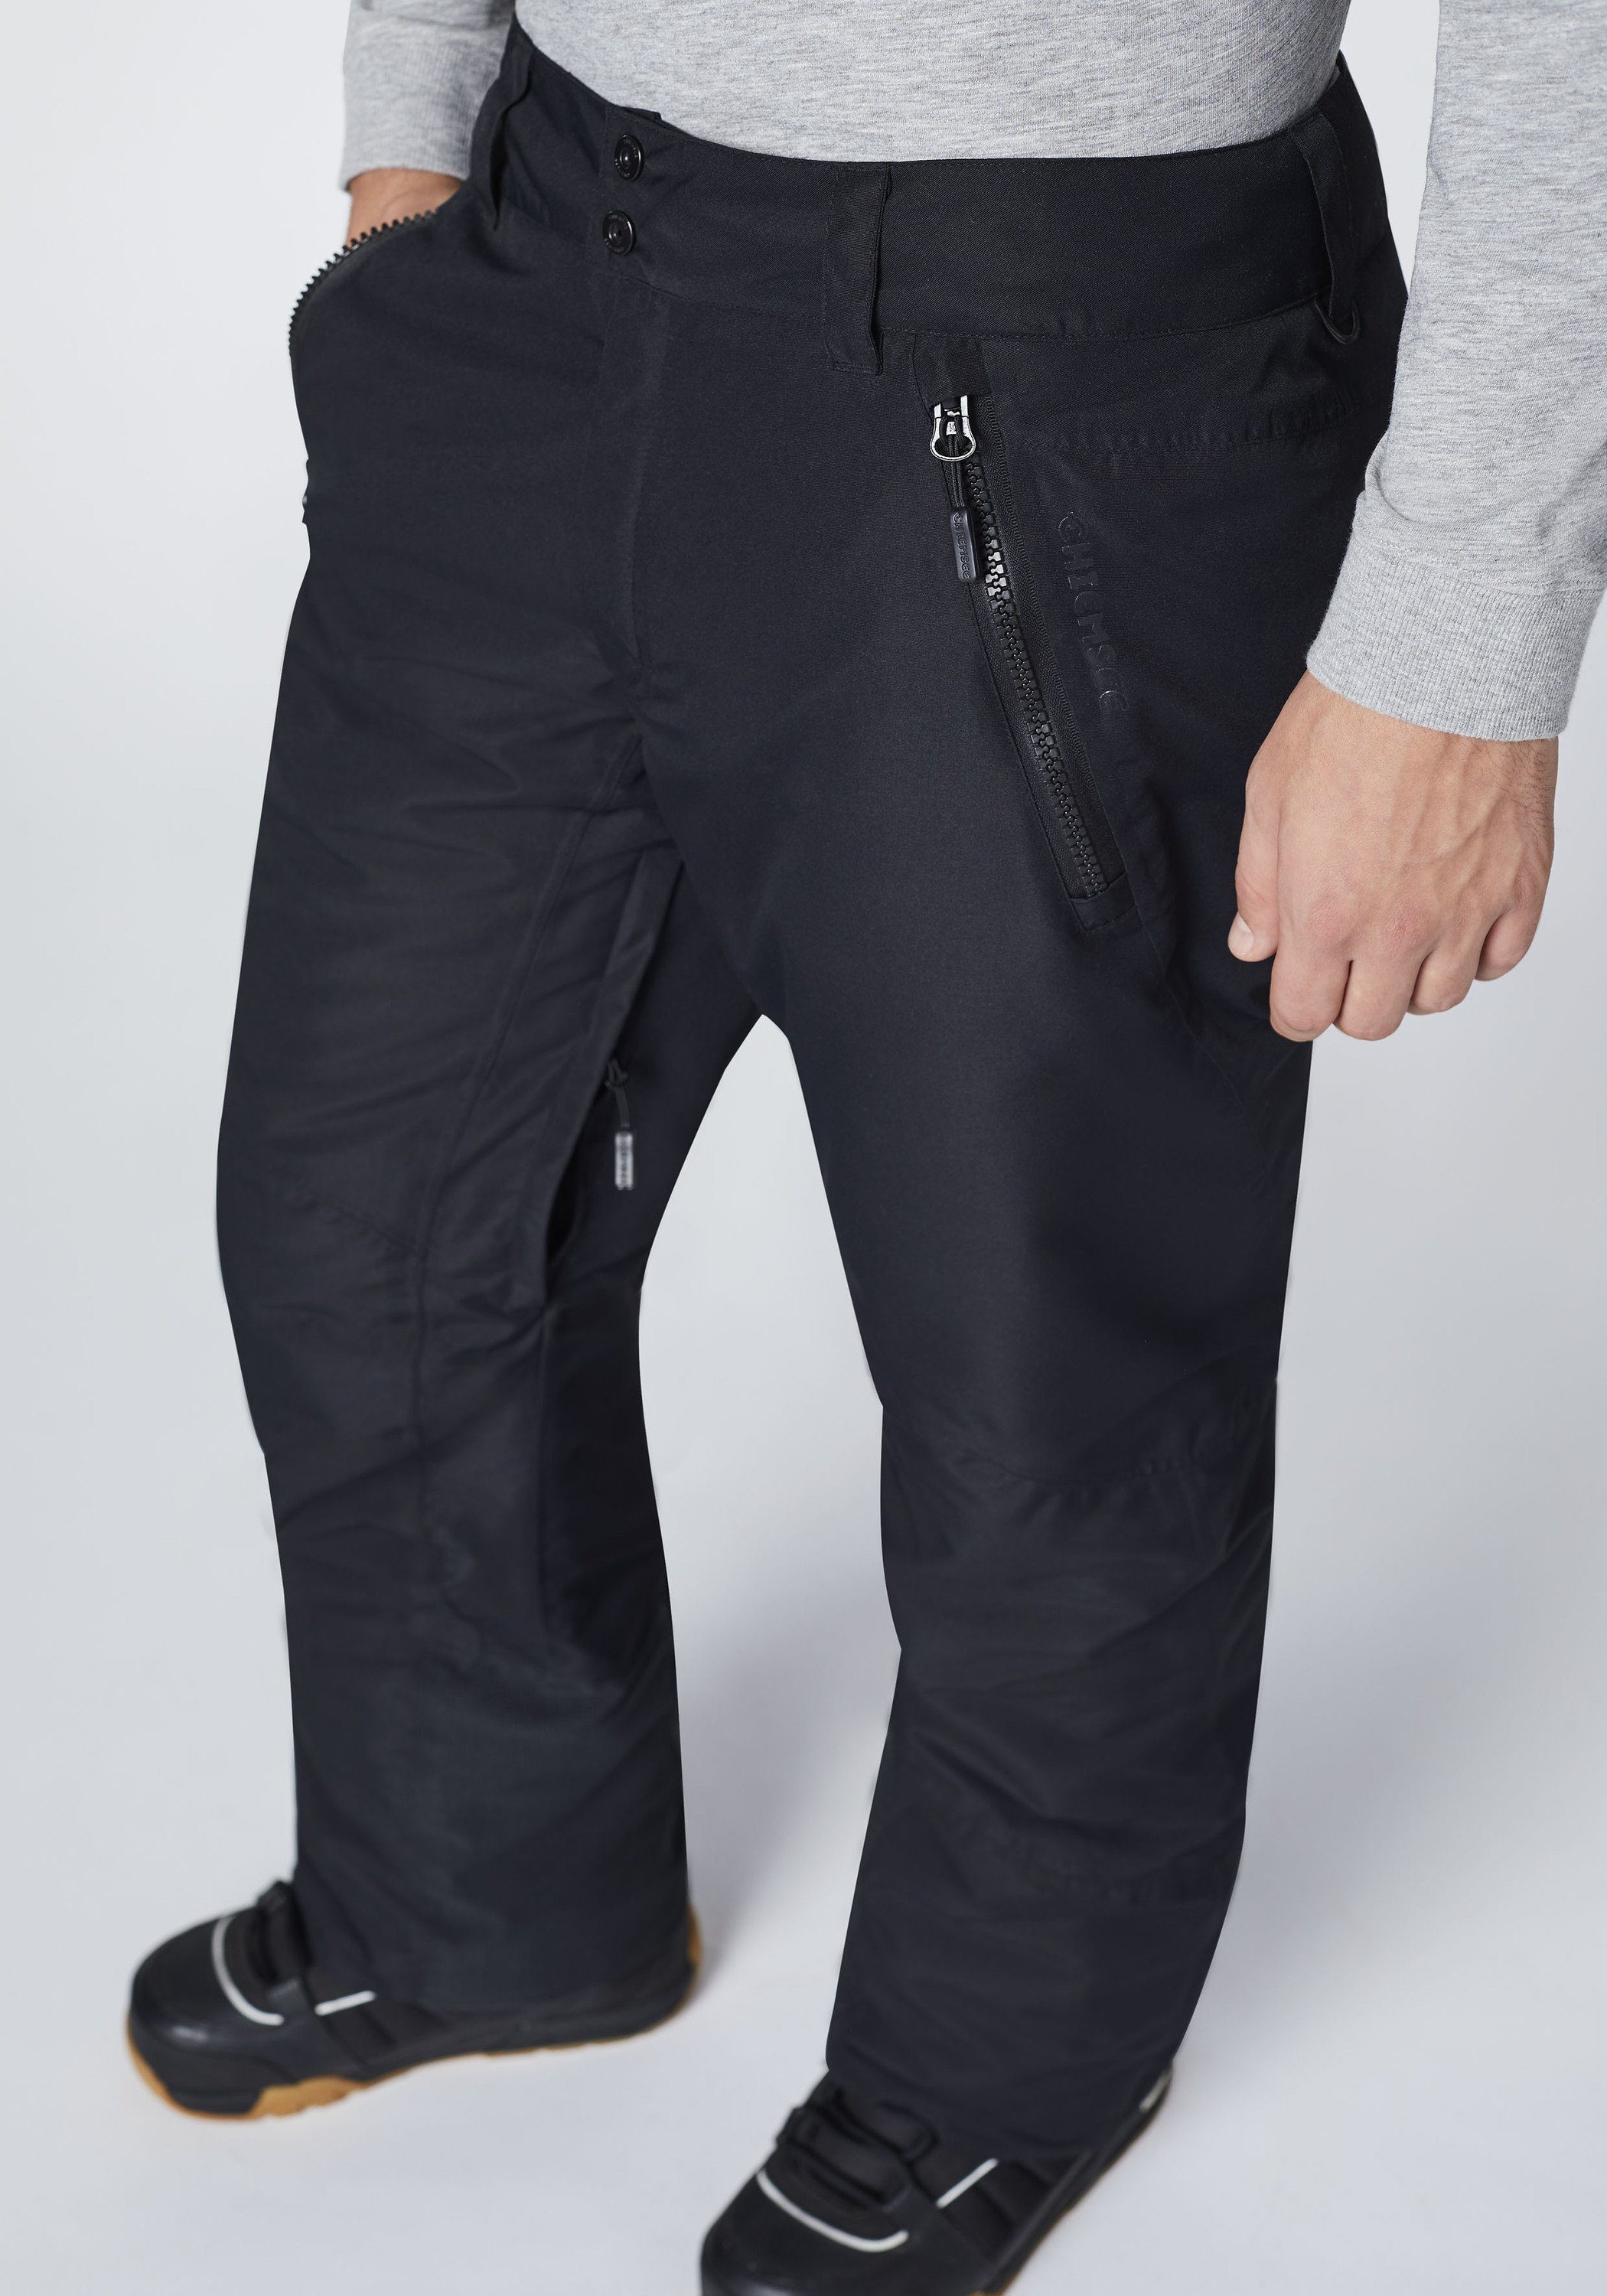 Chiemsee Sporthose Skihose mit Schneefang 1 schwarz/dunkel grau